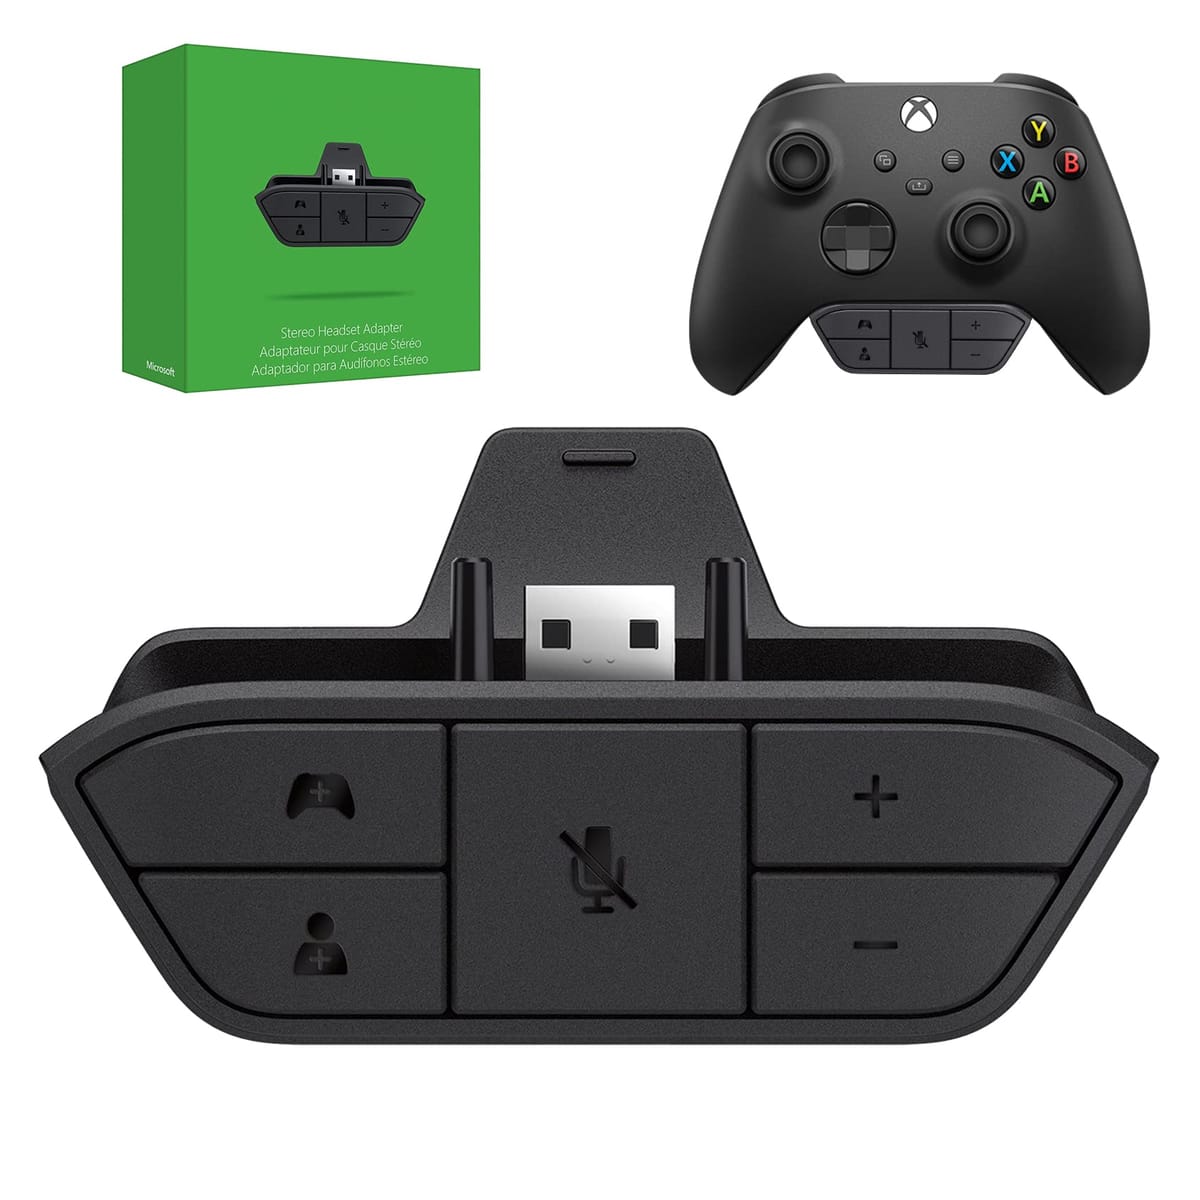 AOJAKI ステレオヘッドセットアダプター Xbox コントローラーアダプター Xbox マイクアダプター Xbox One/One S/X/Elite 1/Elite2/シリーズS/Xコントローラー用 オーディオバランス調整 (ゲームサウンド&ボイス